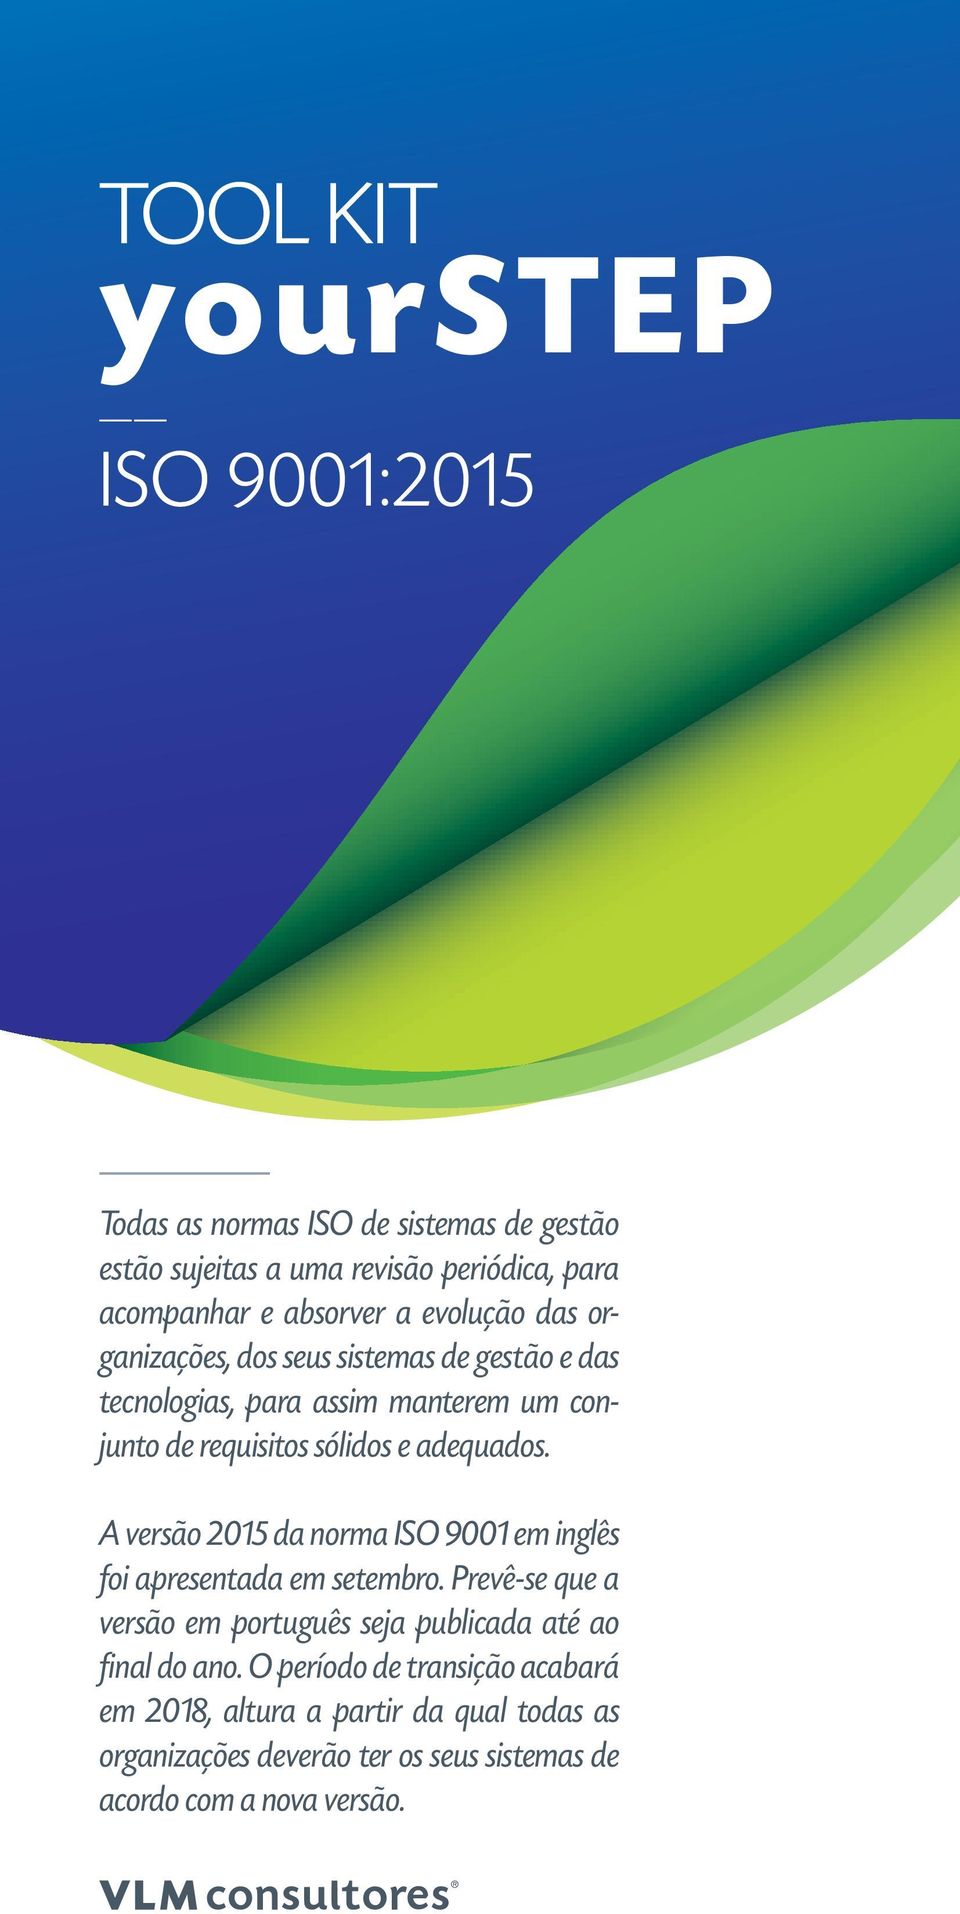 A versão 2015 da norma ISO 9001 em inglês foi apresentada em setembro. Prevê-se que a versão em português seja publicada até ao final do ano.